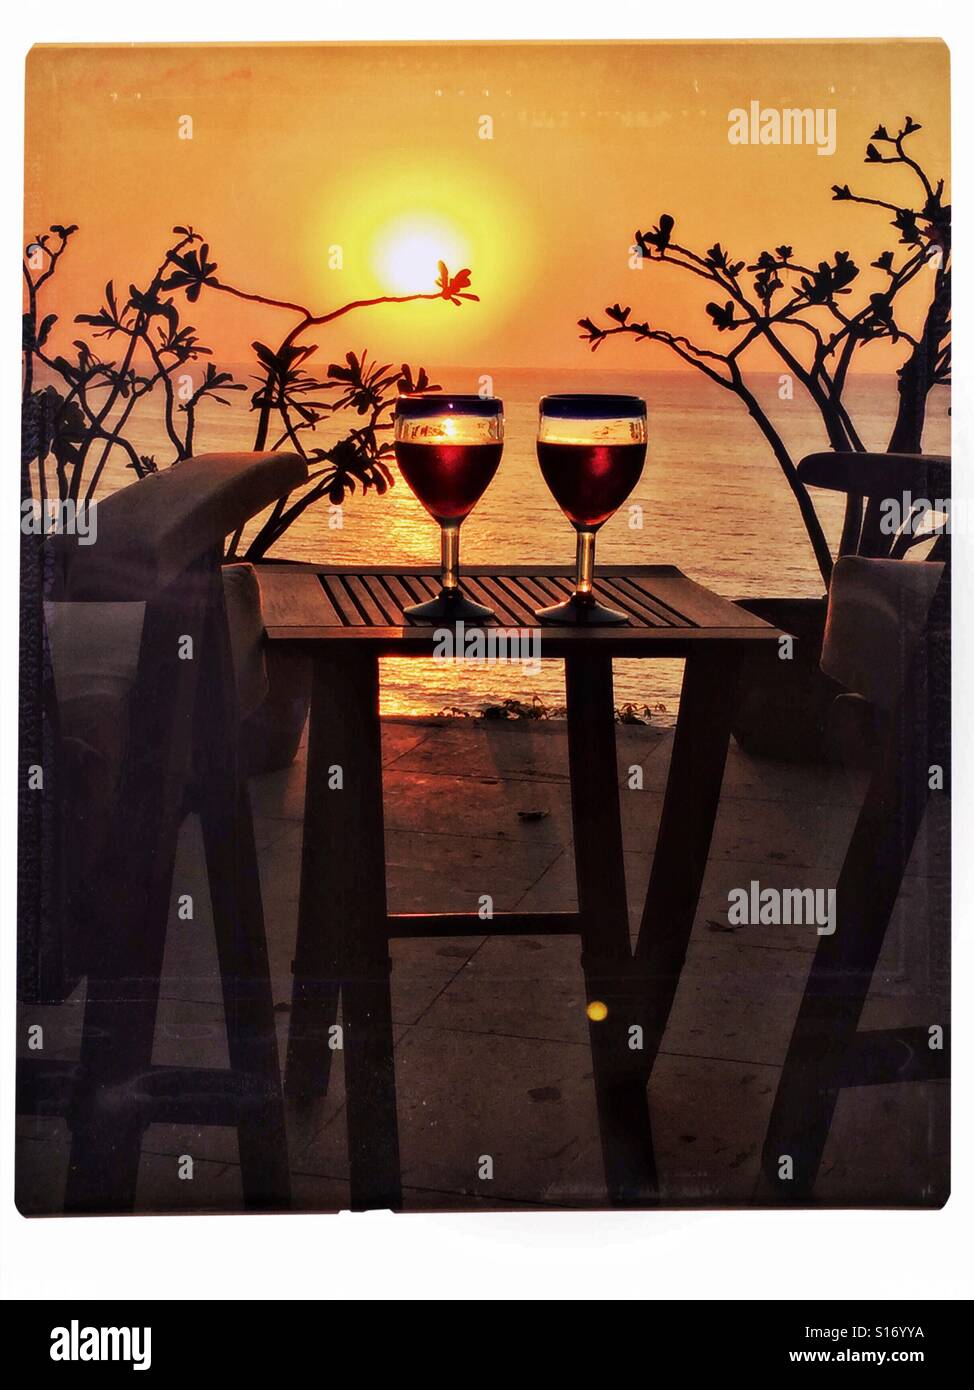 Deux verres de vin mexicain cerclée de bleu sont remplis de vin rouge sur une table de teck entre deux chaises sur un pont surplombant un coucher de soleil sur l'océan Pacifique dans le Nayarit, Mexique. Banque D'Images